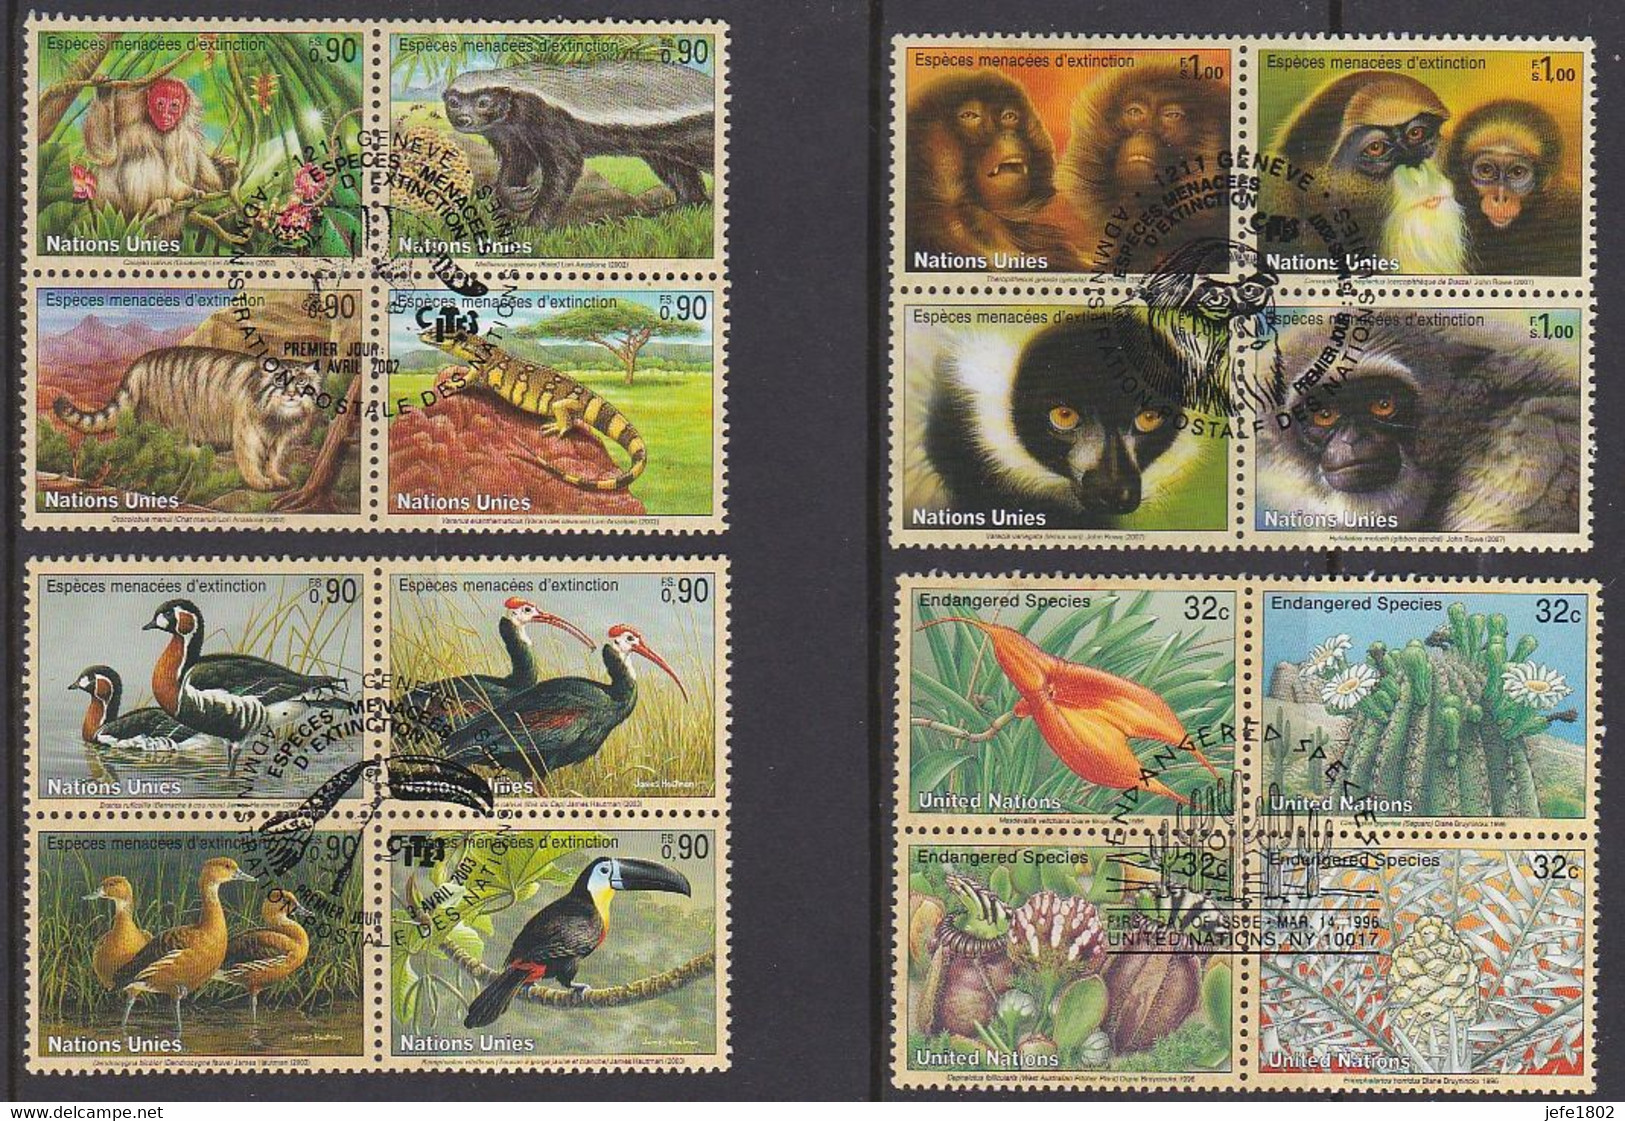 Espèces Menacées D'extinction (FS) Endangered Species (c)  - 16 Cancelled Stamps Nations Unies - United Nations - Collections, Lots & Séries